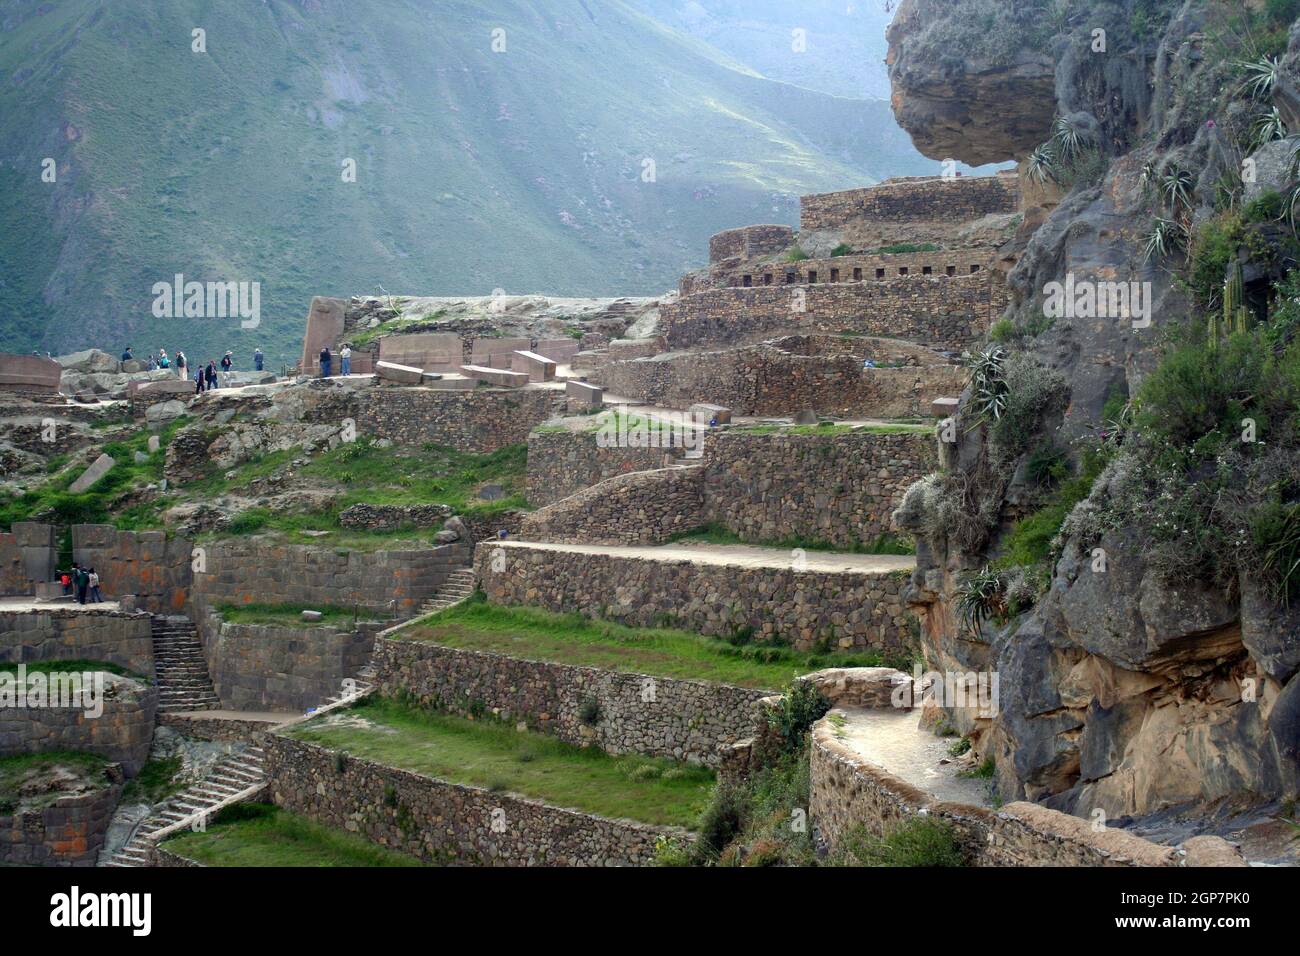 Incan ruins at Ollantaytambo in the Sacred Valley, Peru Stock Photo